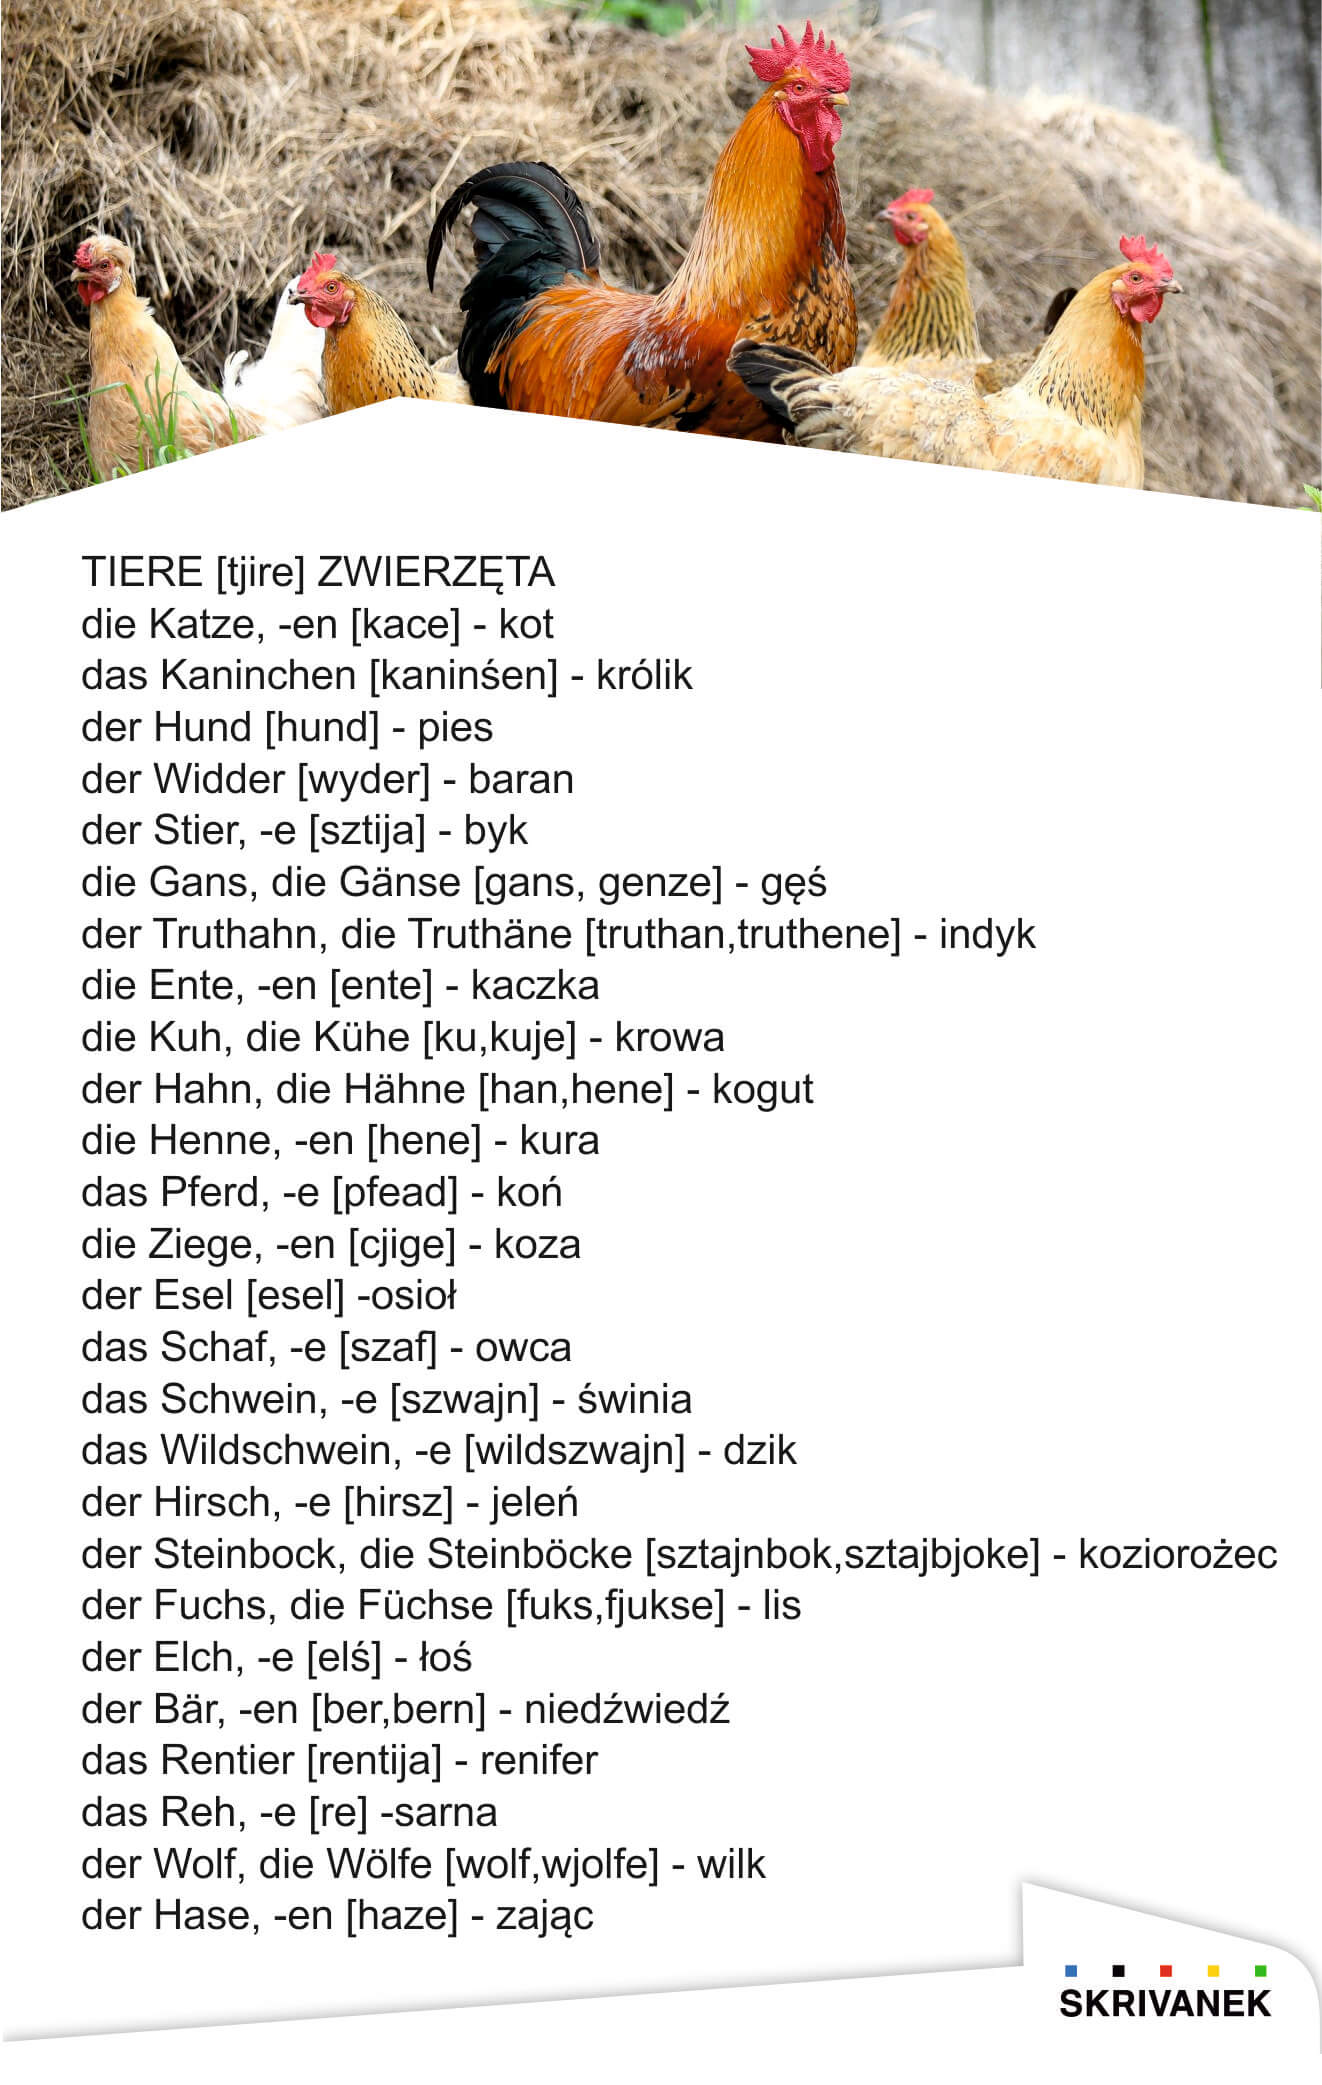 zwierzęta po niemiecku